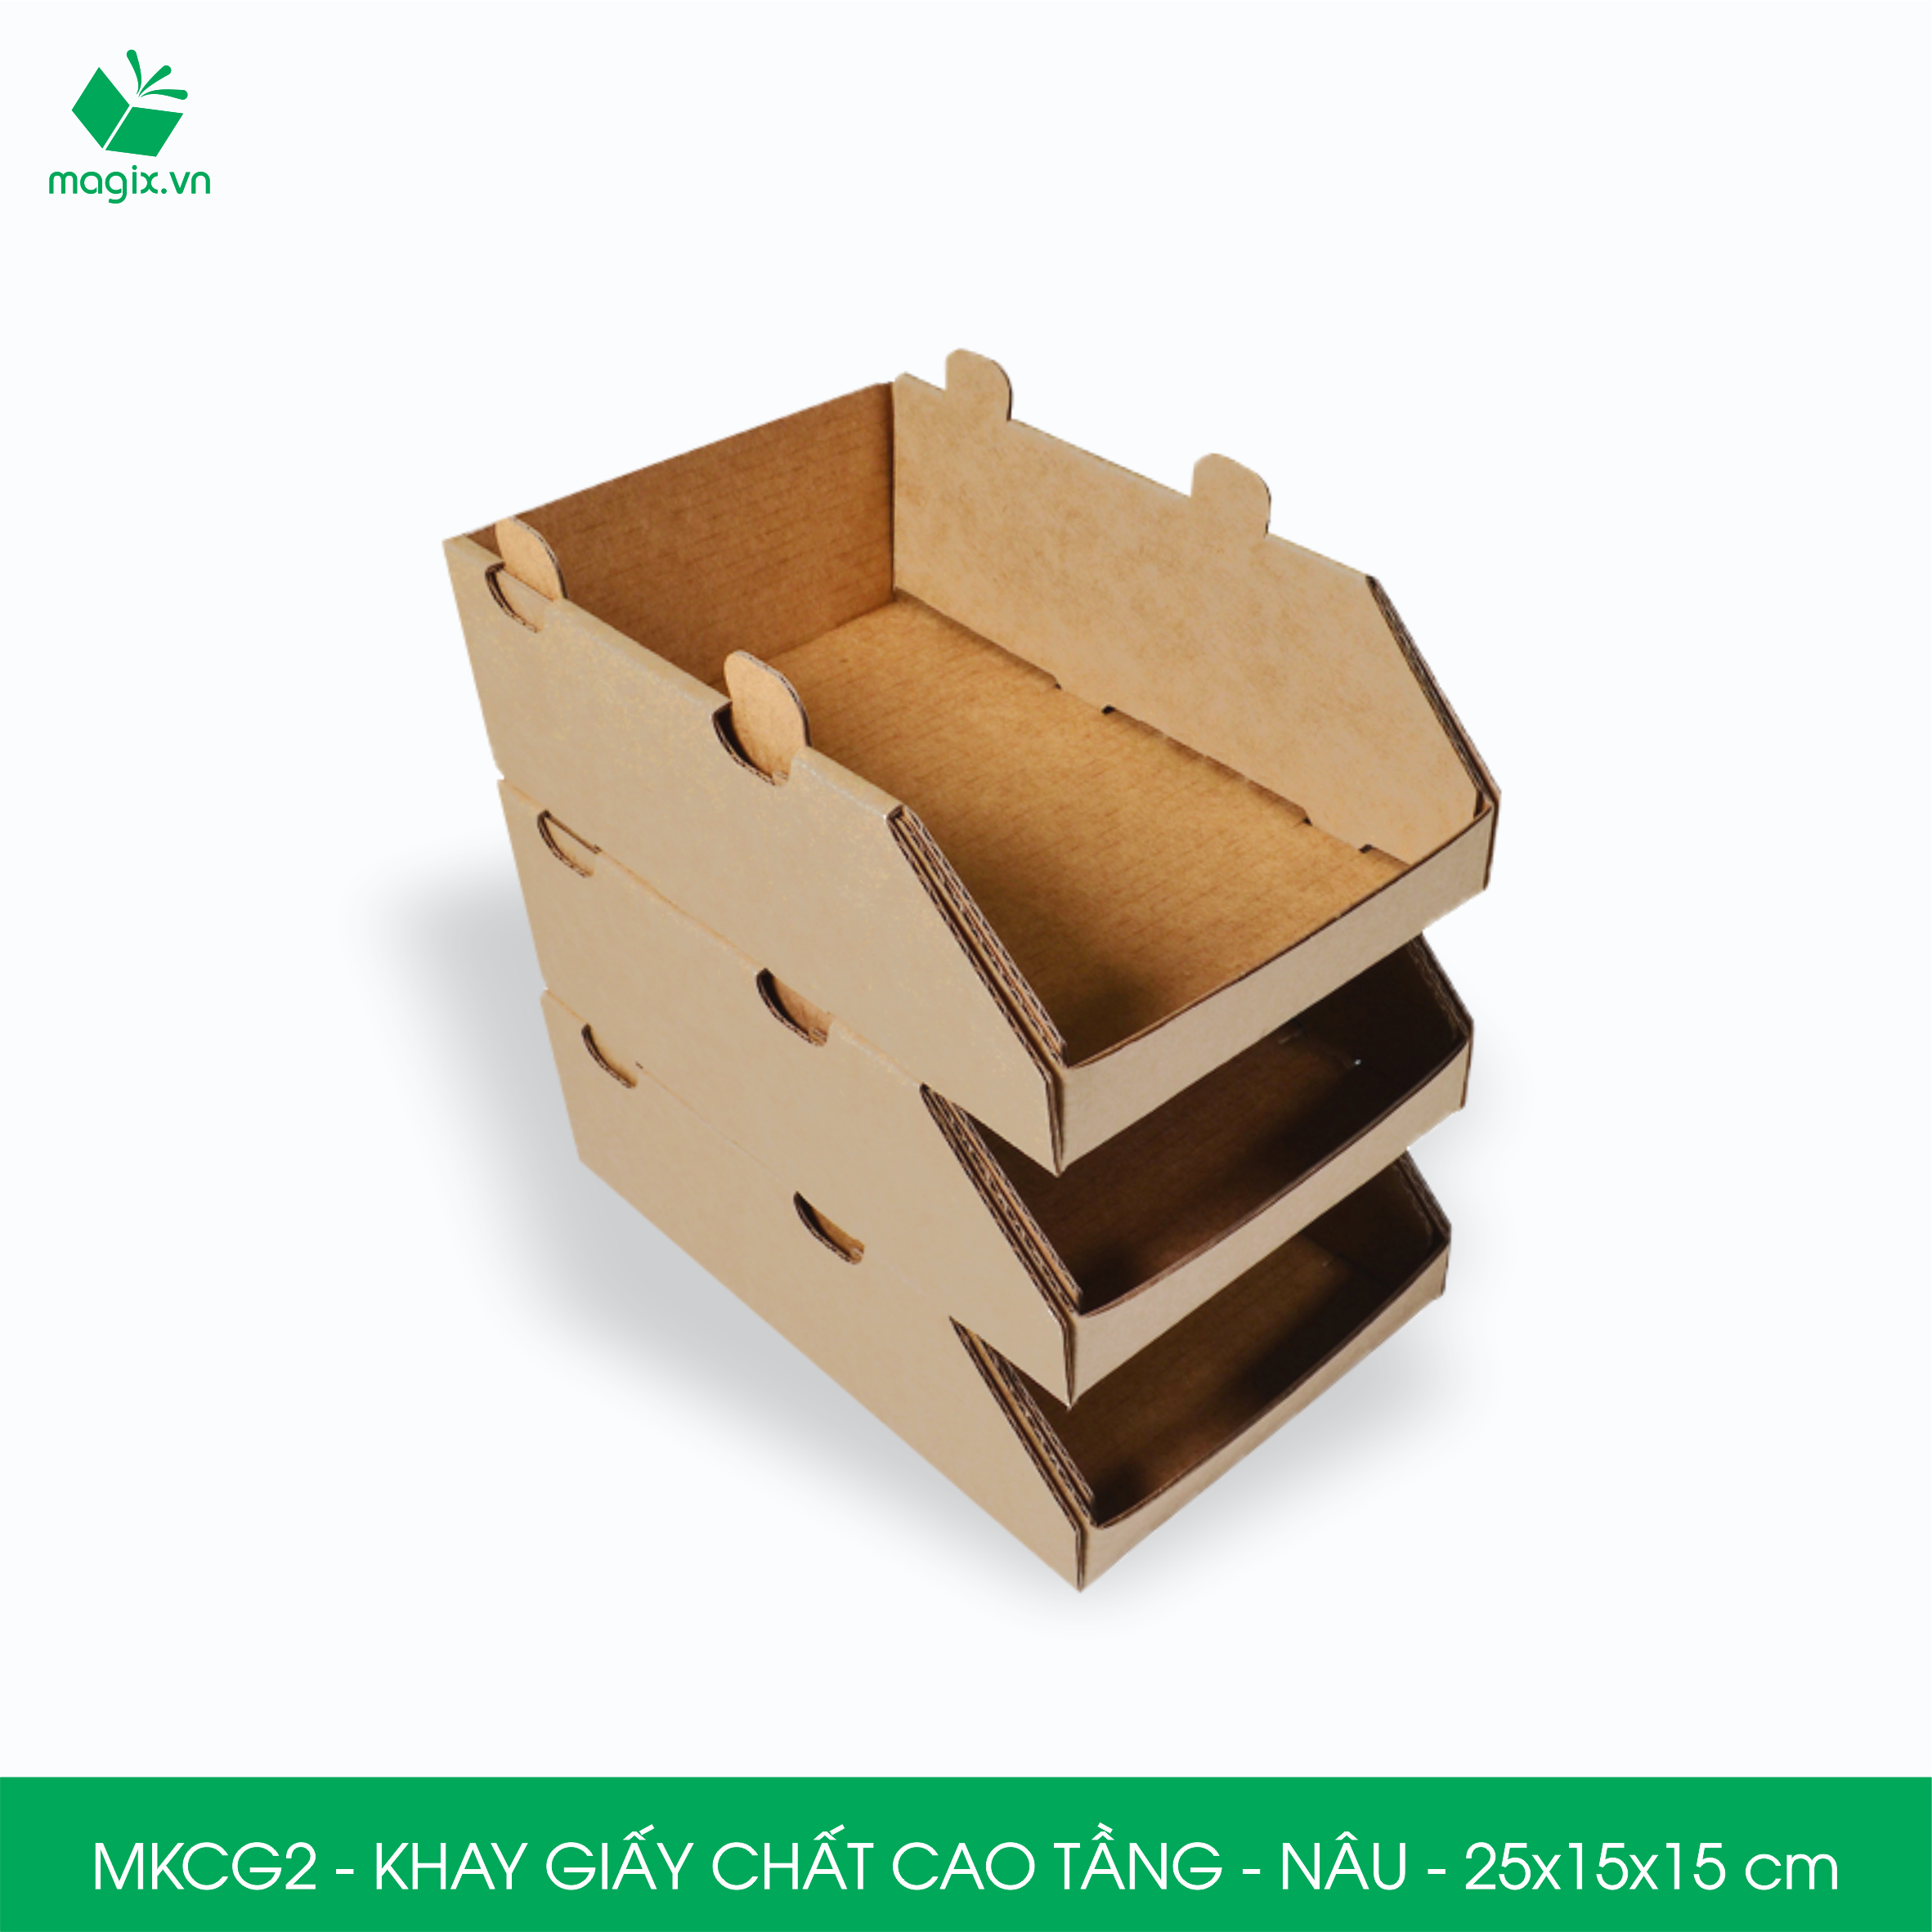 MKCG2 - 25x15x15 cm - 5 Khay giấy chất cao tầng bằng giấy carton siêu cứng, kệ giấy đựng đồ văn phòng, khay đựng dụng cụ, khay linh kiện, kệ phân loại dụng cụ